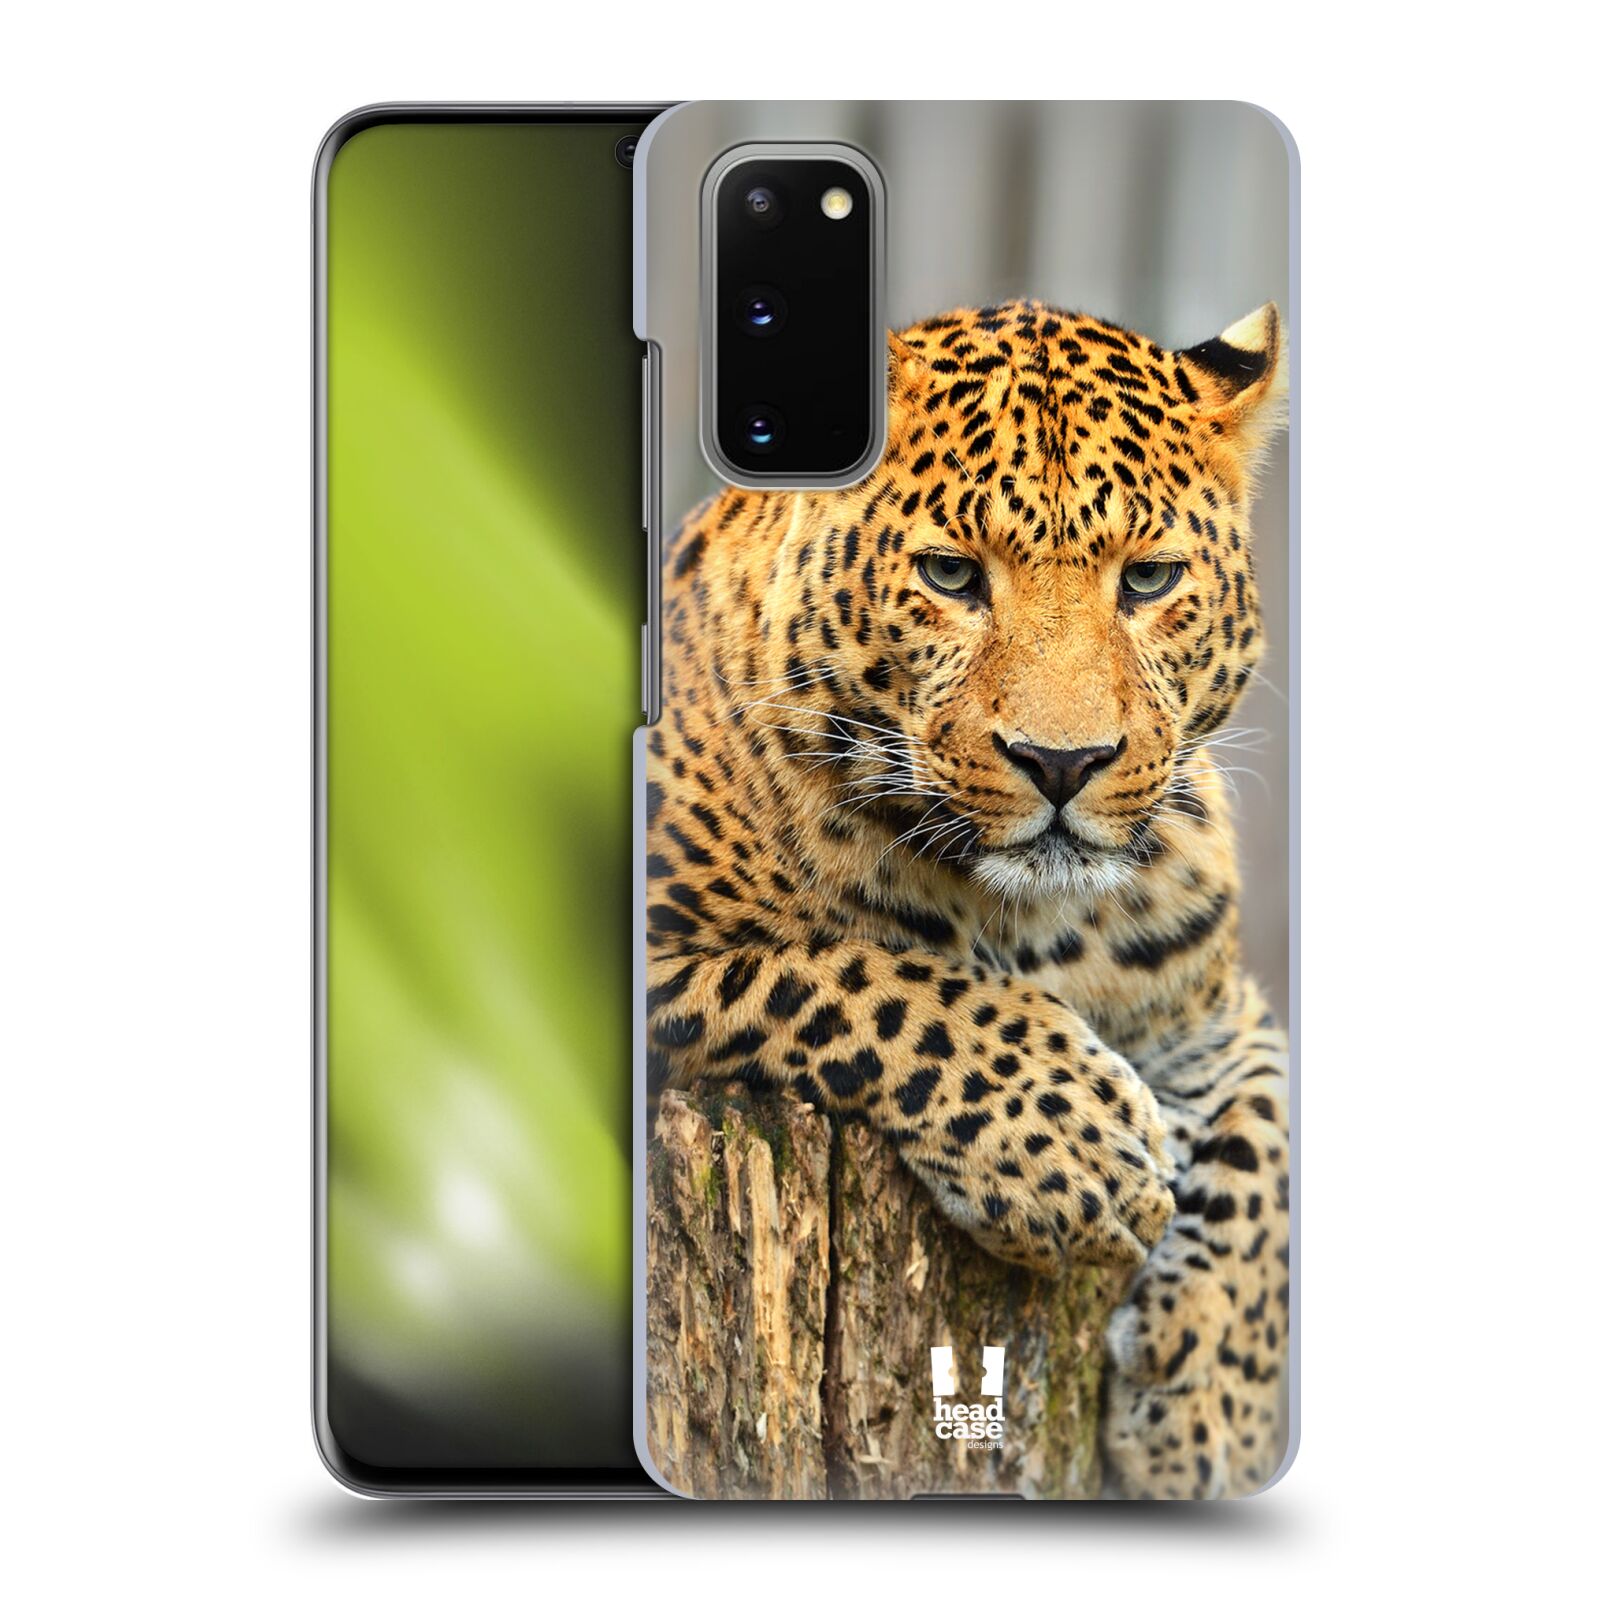 Pouzdro na mobil Samsung Galaxy S20 - HEAD CASE - vzor Divočina, Divoký život a zvířata foto LEOPARD PORTRÉT